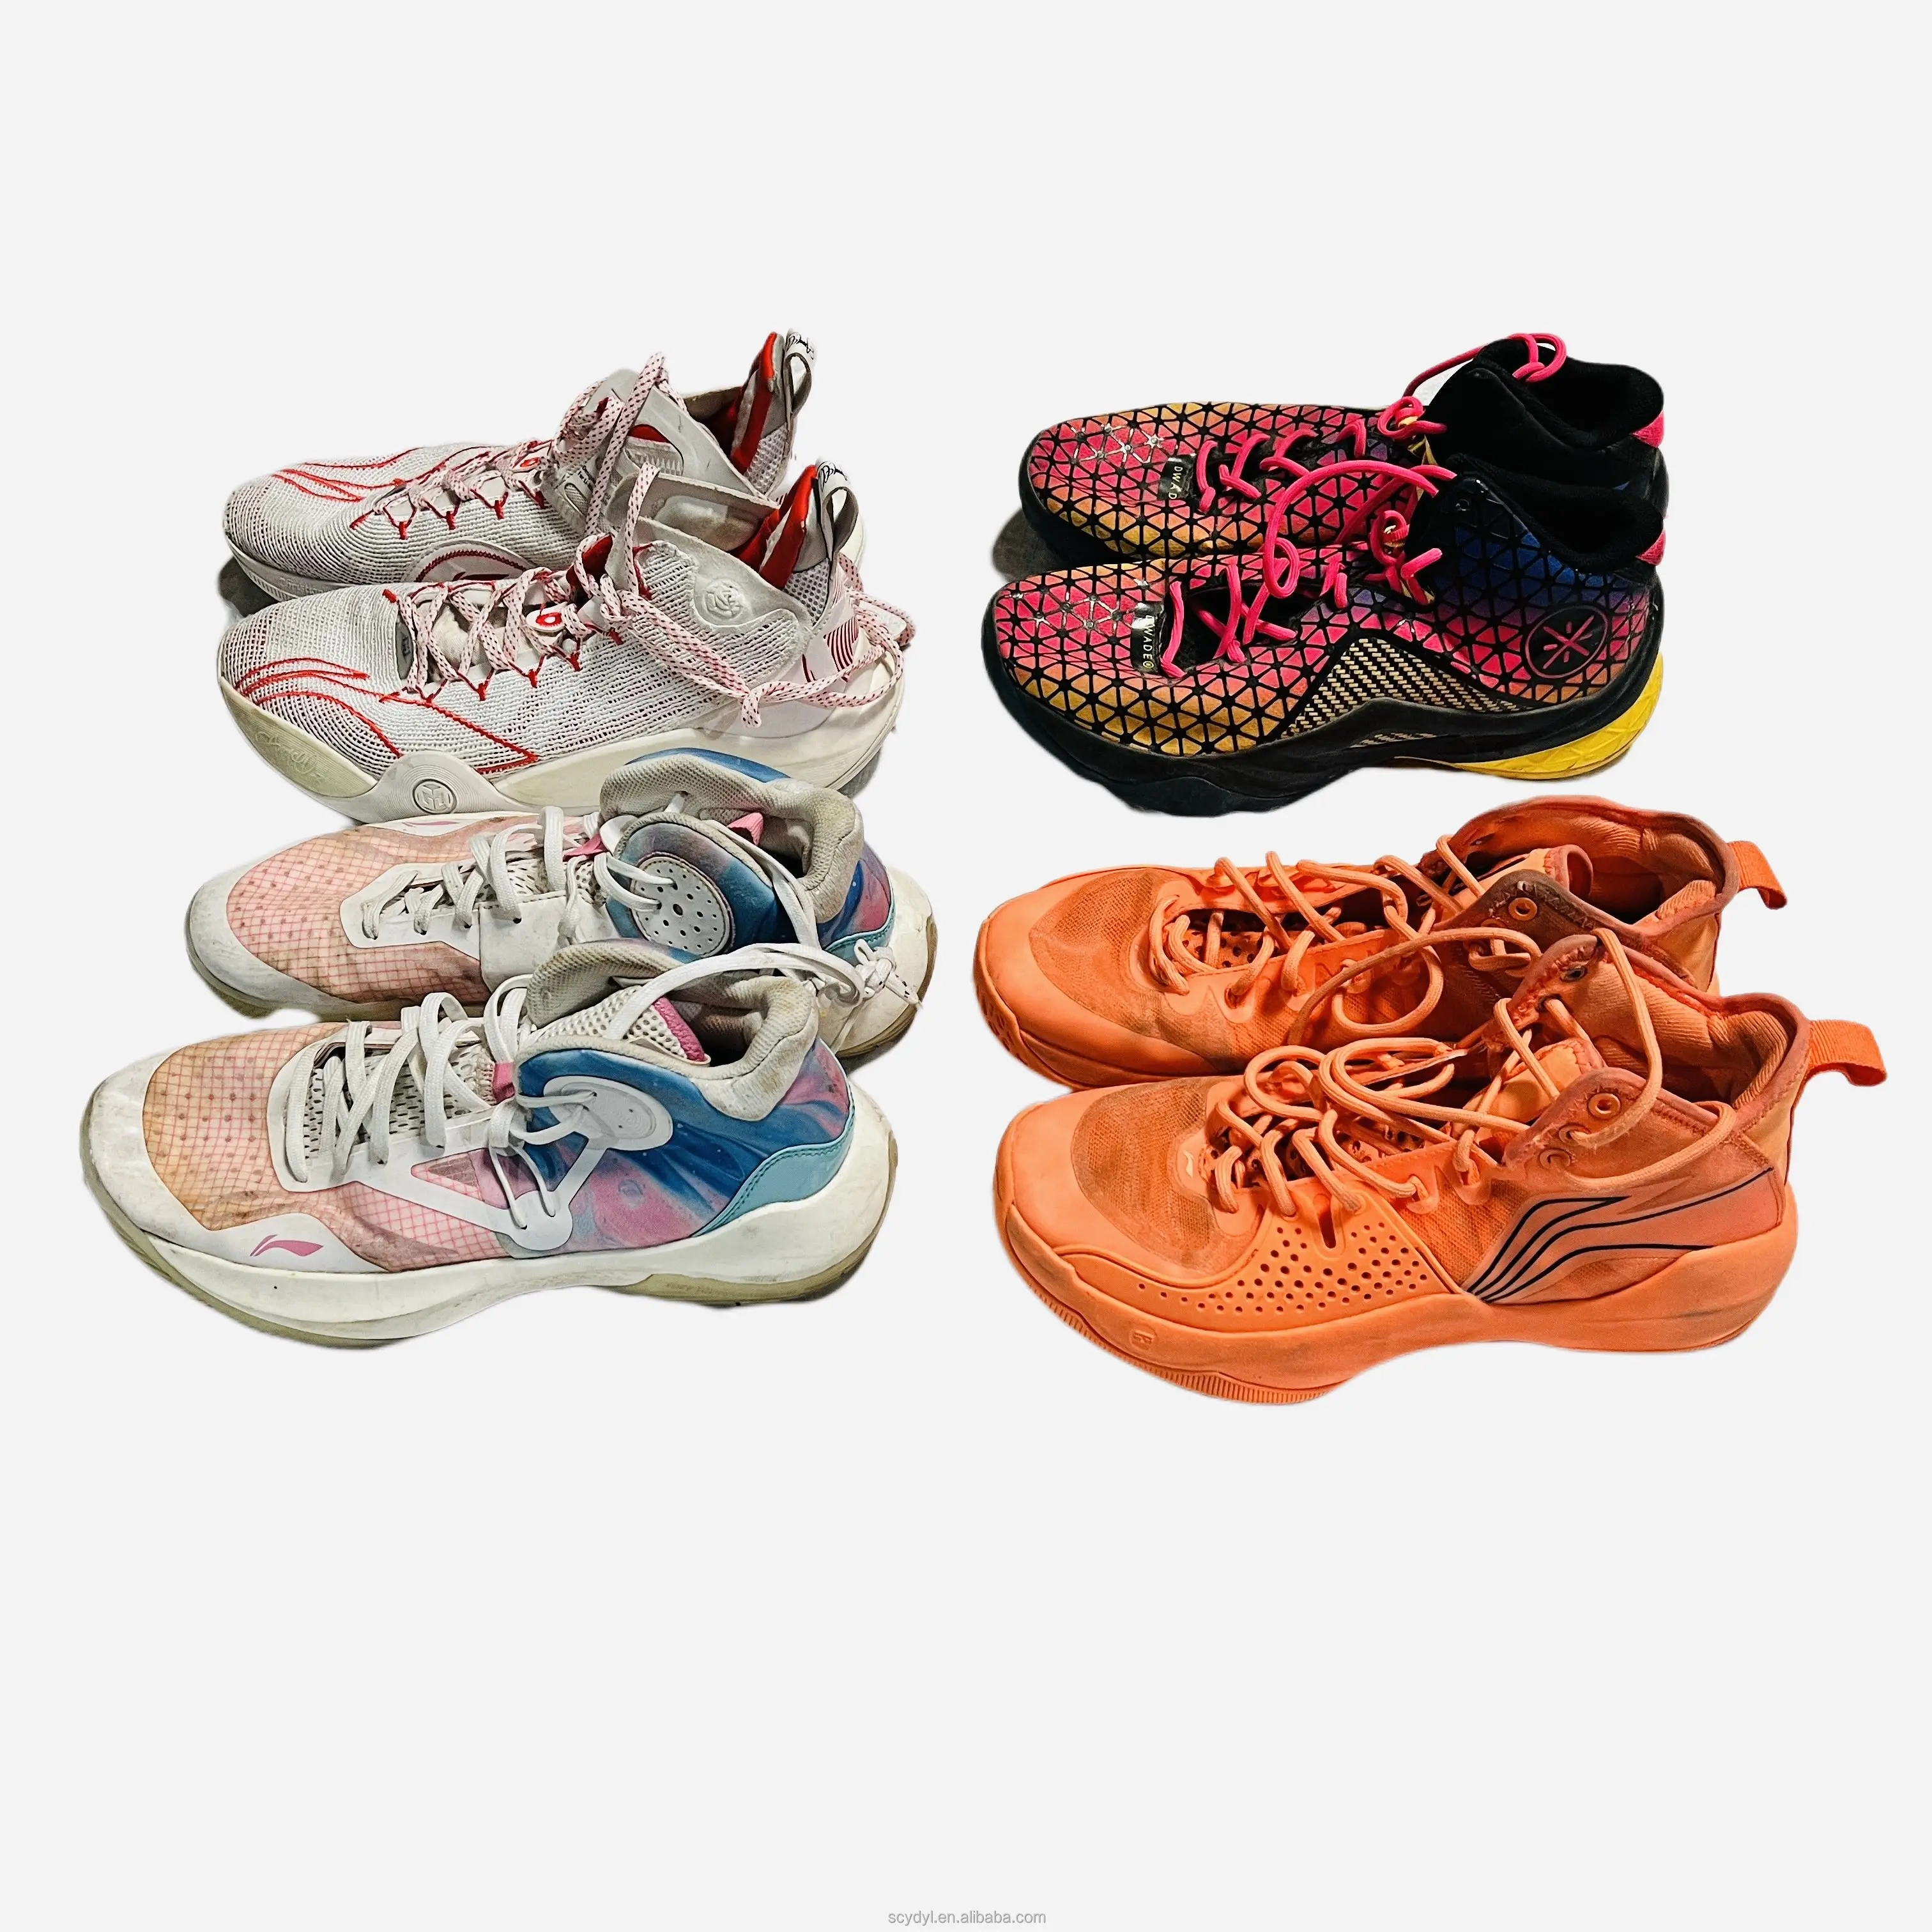 S03 Marque chinoise de haute qualité chaussures de basket-ball d'occasion vente à chaud baskets respirantes Stock sport chaussures d'occasion chaussures d'occasion